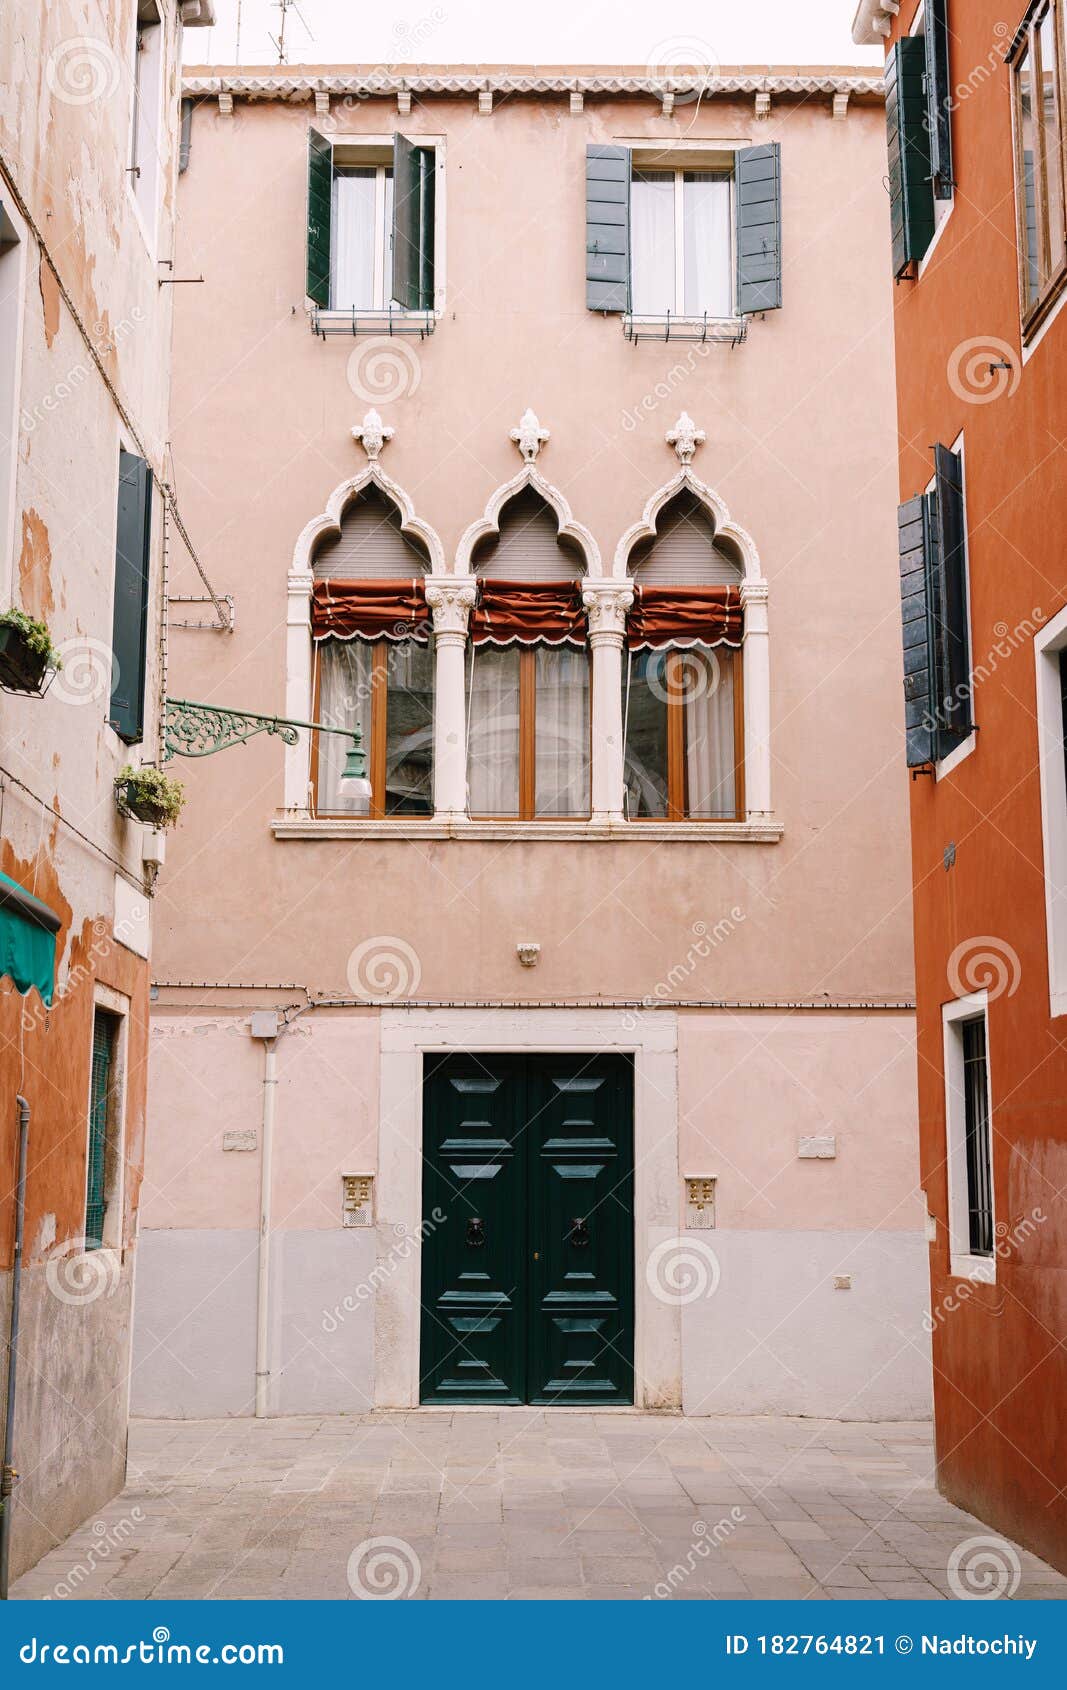 Fachada De Una Casa De Durazno En Venice Italy. Puerta Delantera De Madera  Verde Enorme Tres Ventanas Venecianas Clásicas Imagen de archivo - Imagen  de anaranjado, verde: 182764821